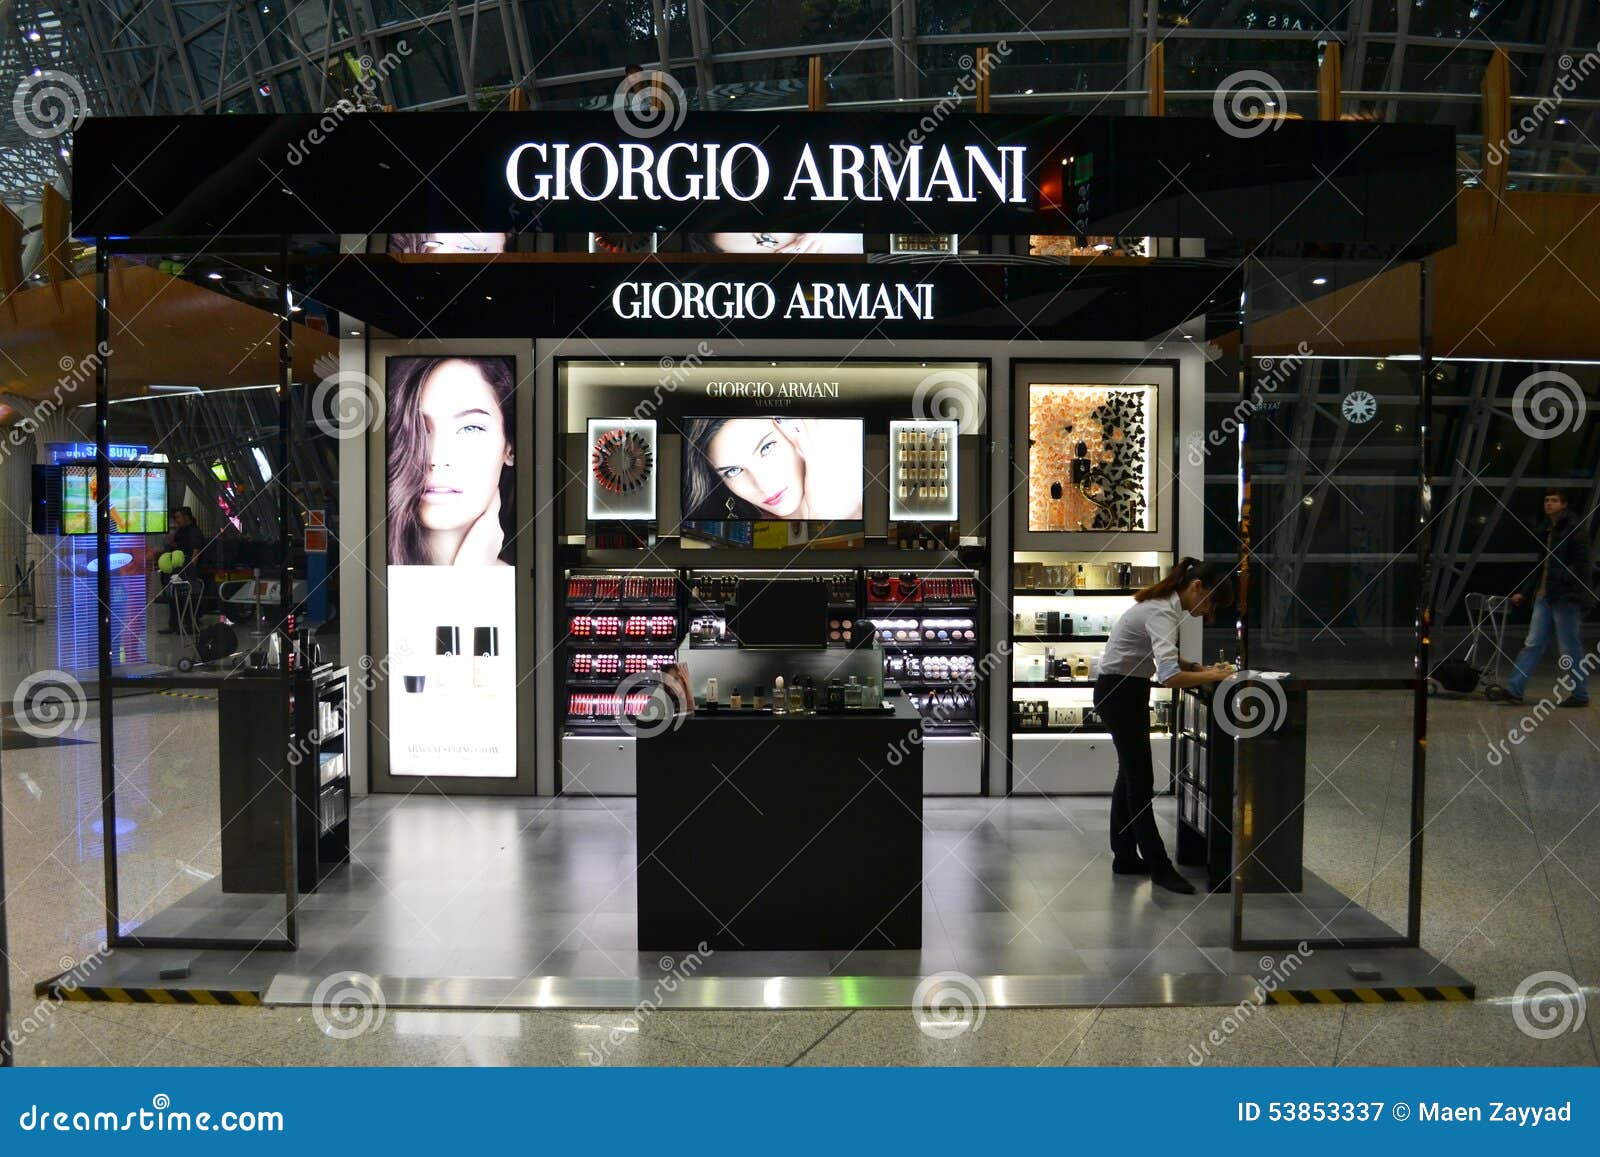 giorgio armani outlet near me